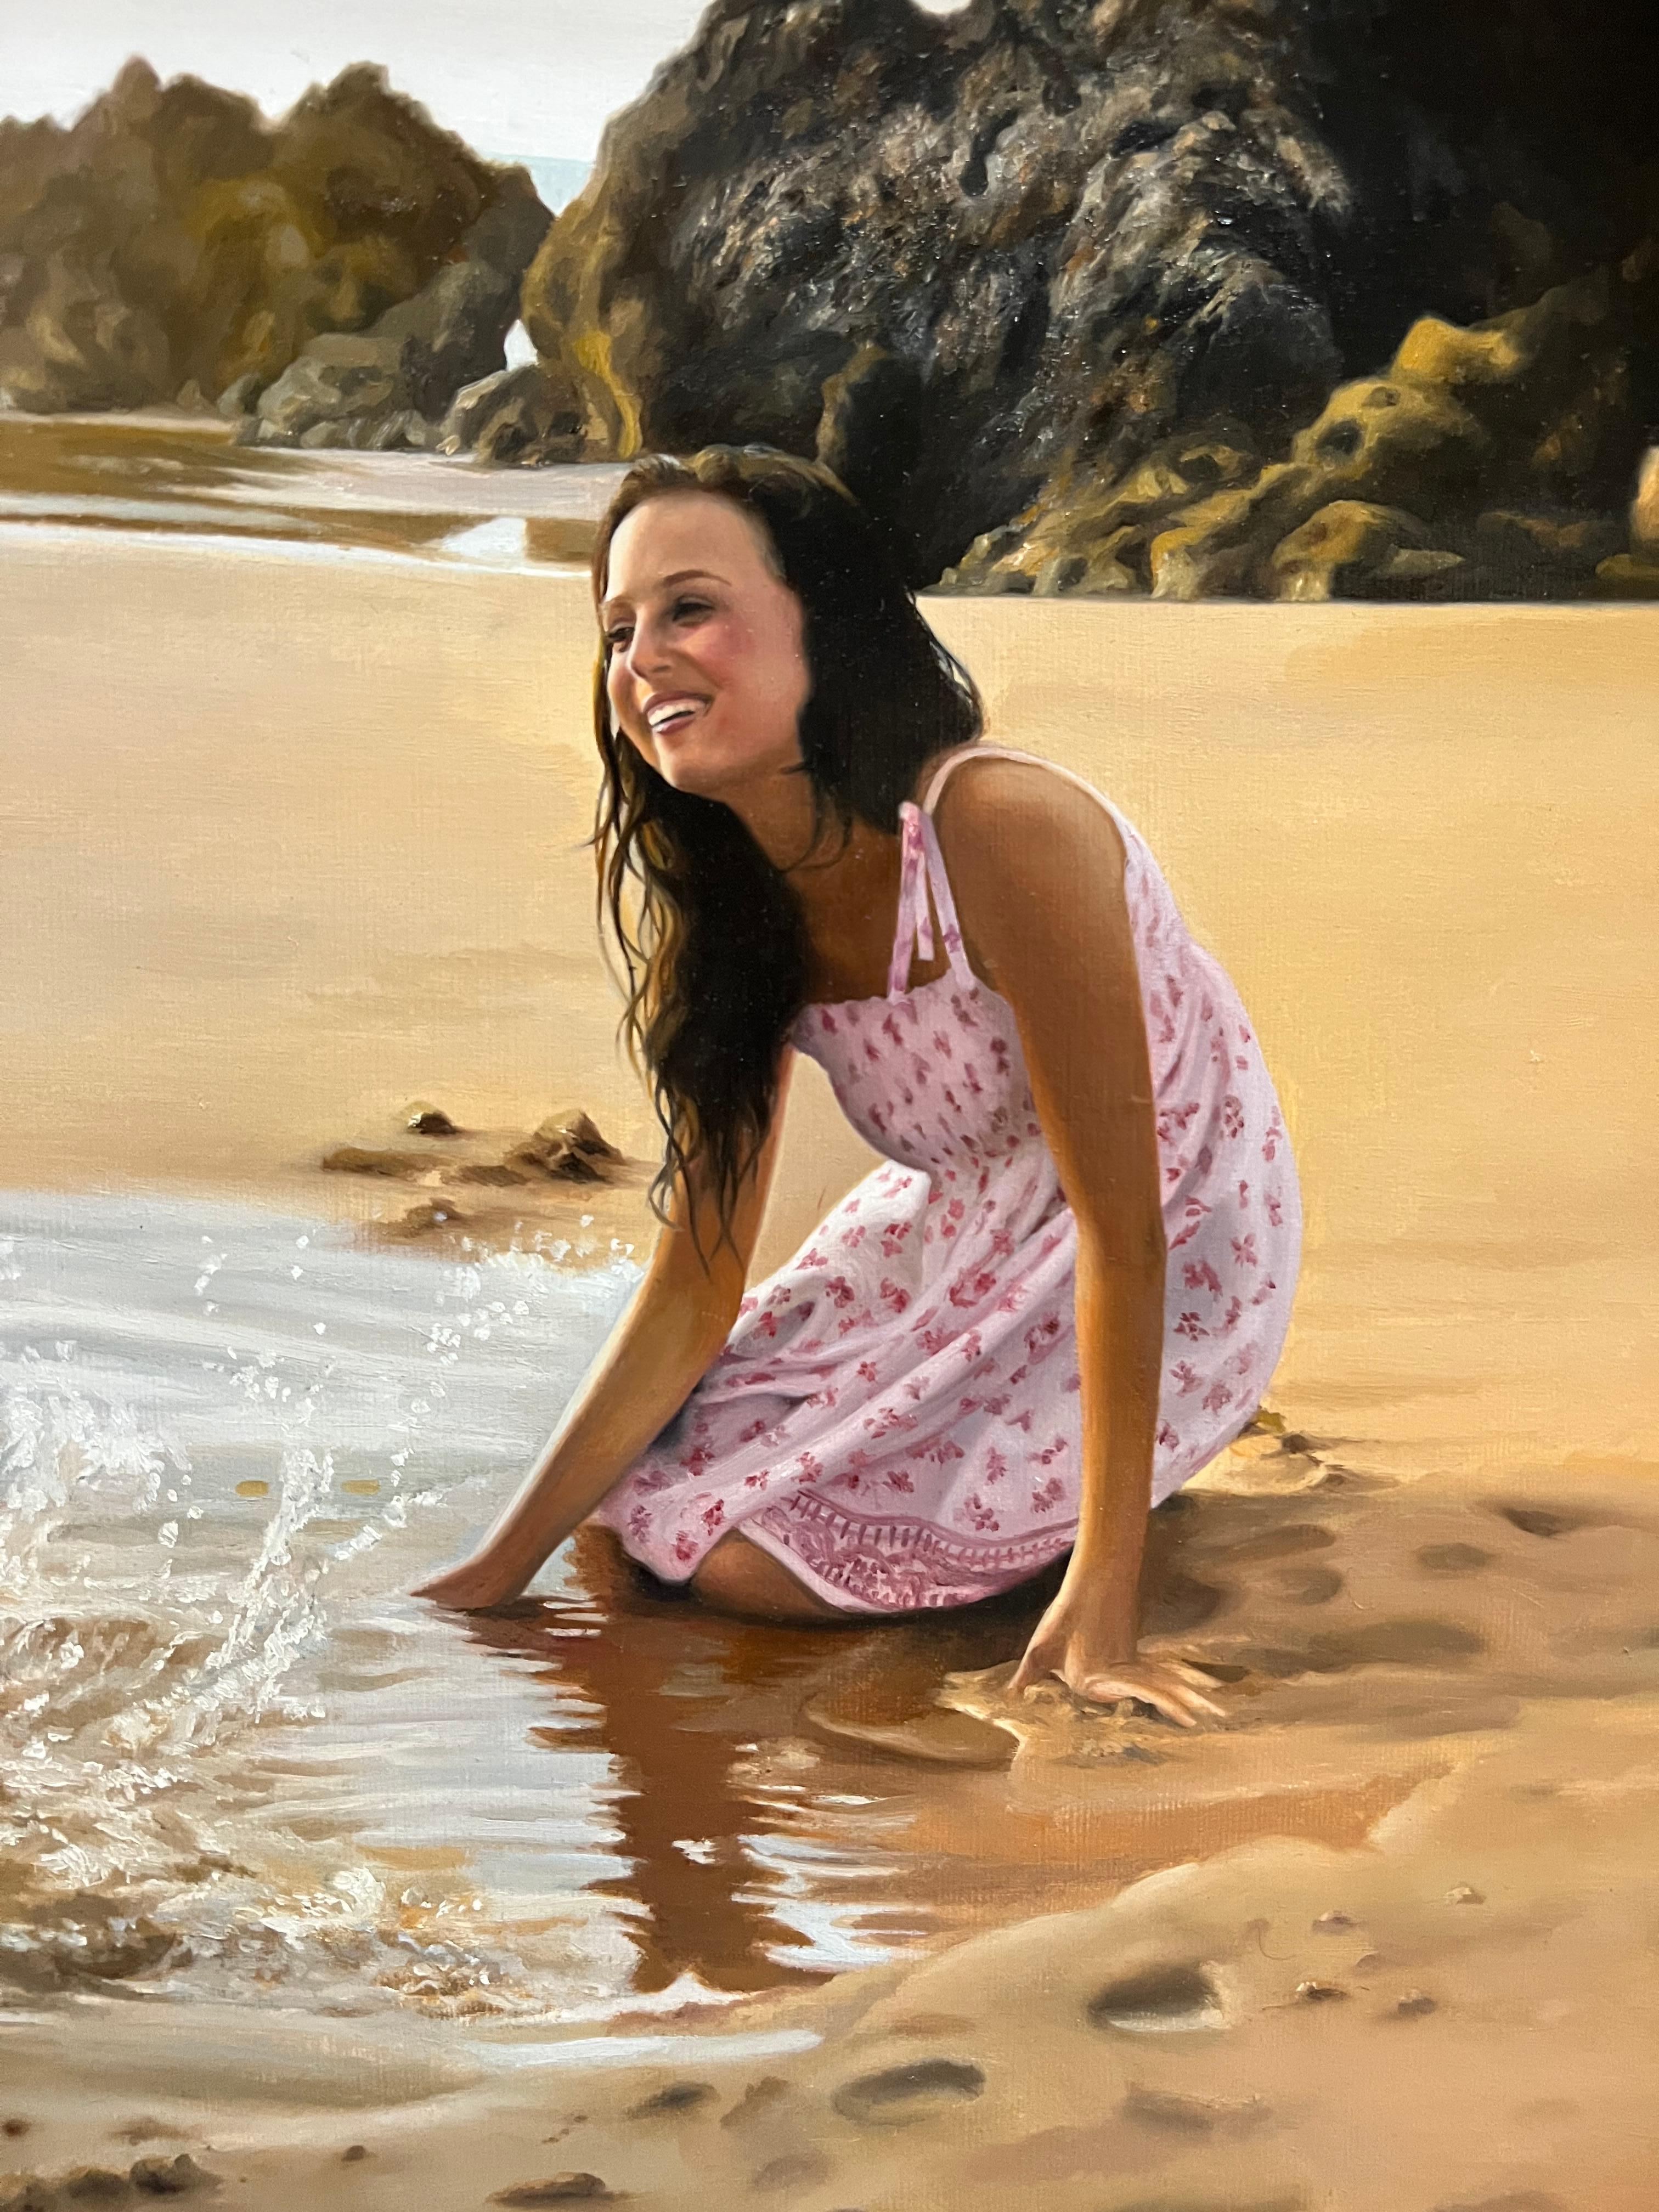 En La Playa (At the Beach) - Realist Painting by Javier Pedrosa 